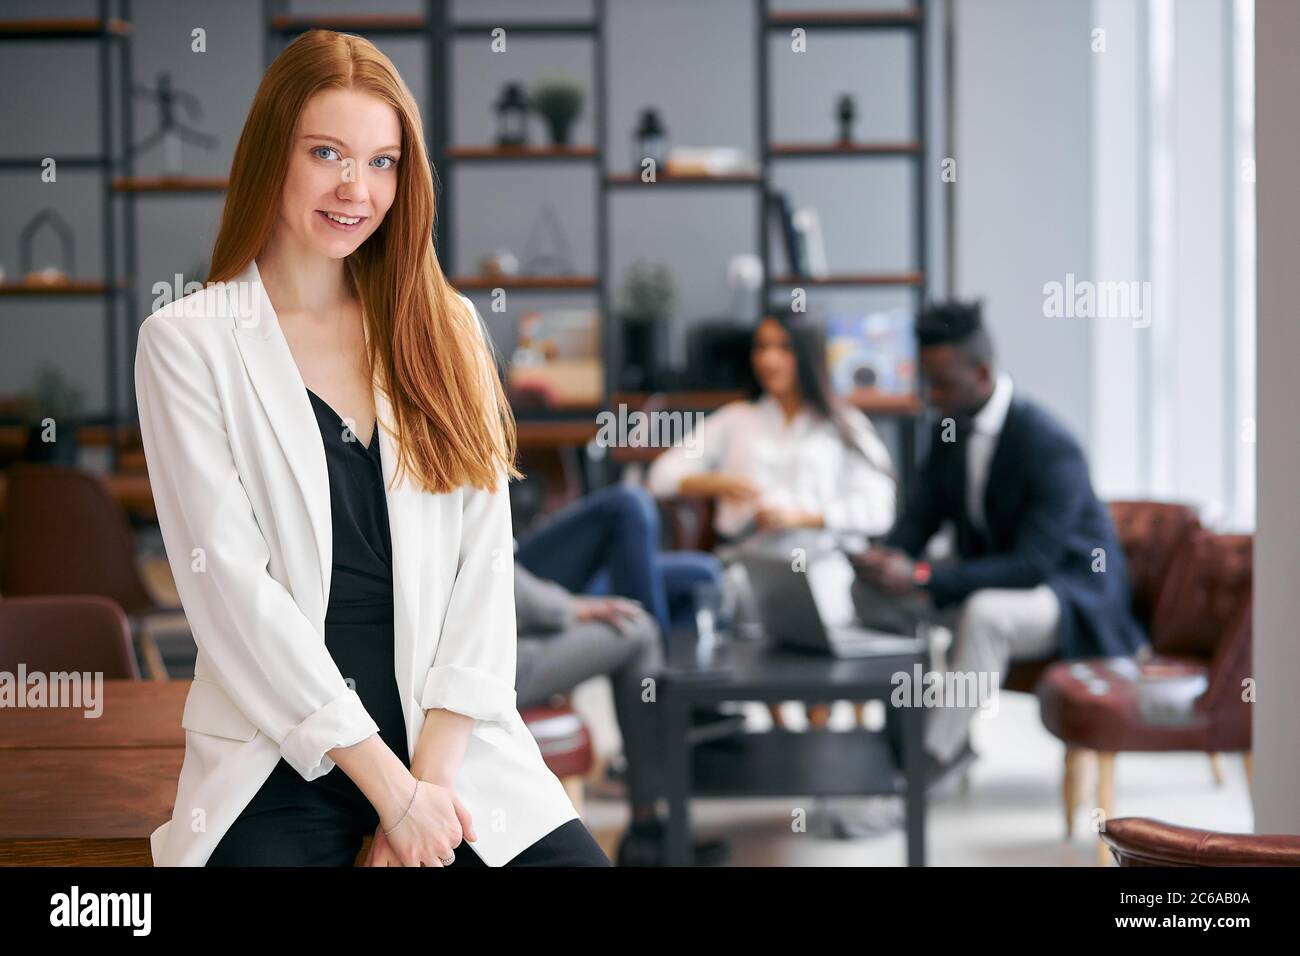 Belle femme avec un cheveu rouge regardant la caméra, posant à la caméra. Groupe international de partenaires commerciaux Banque D'Images